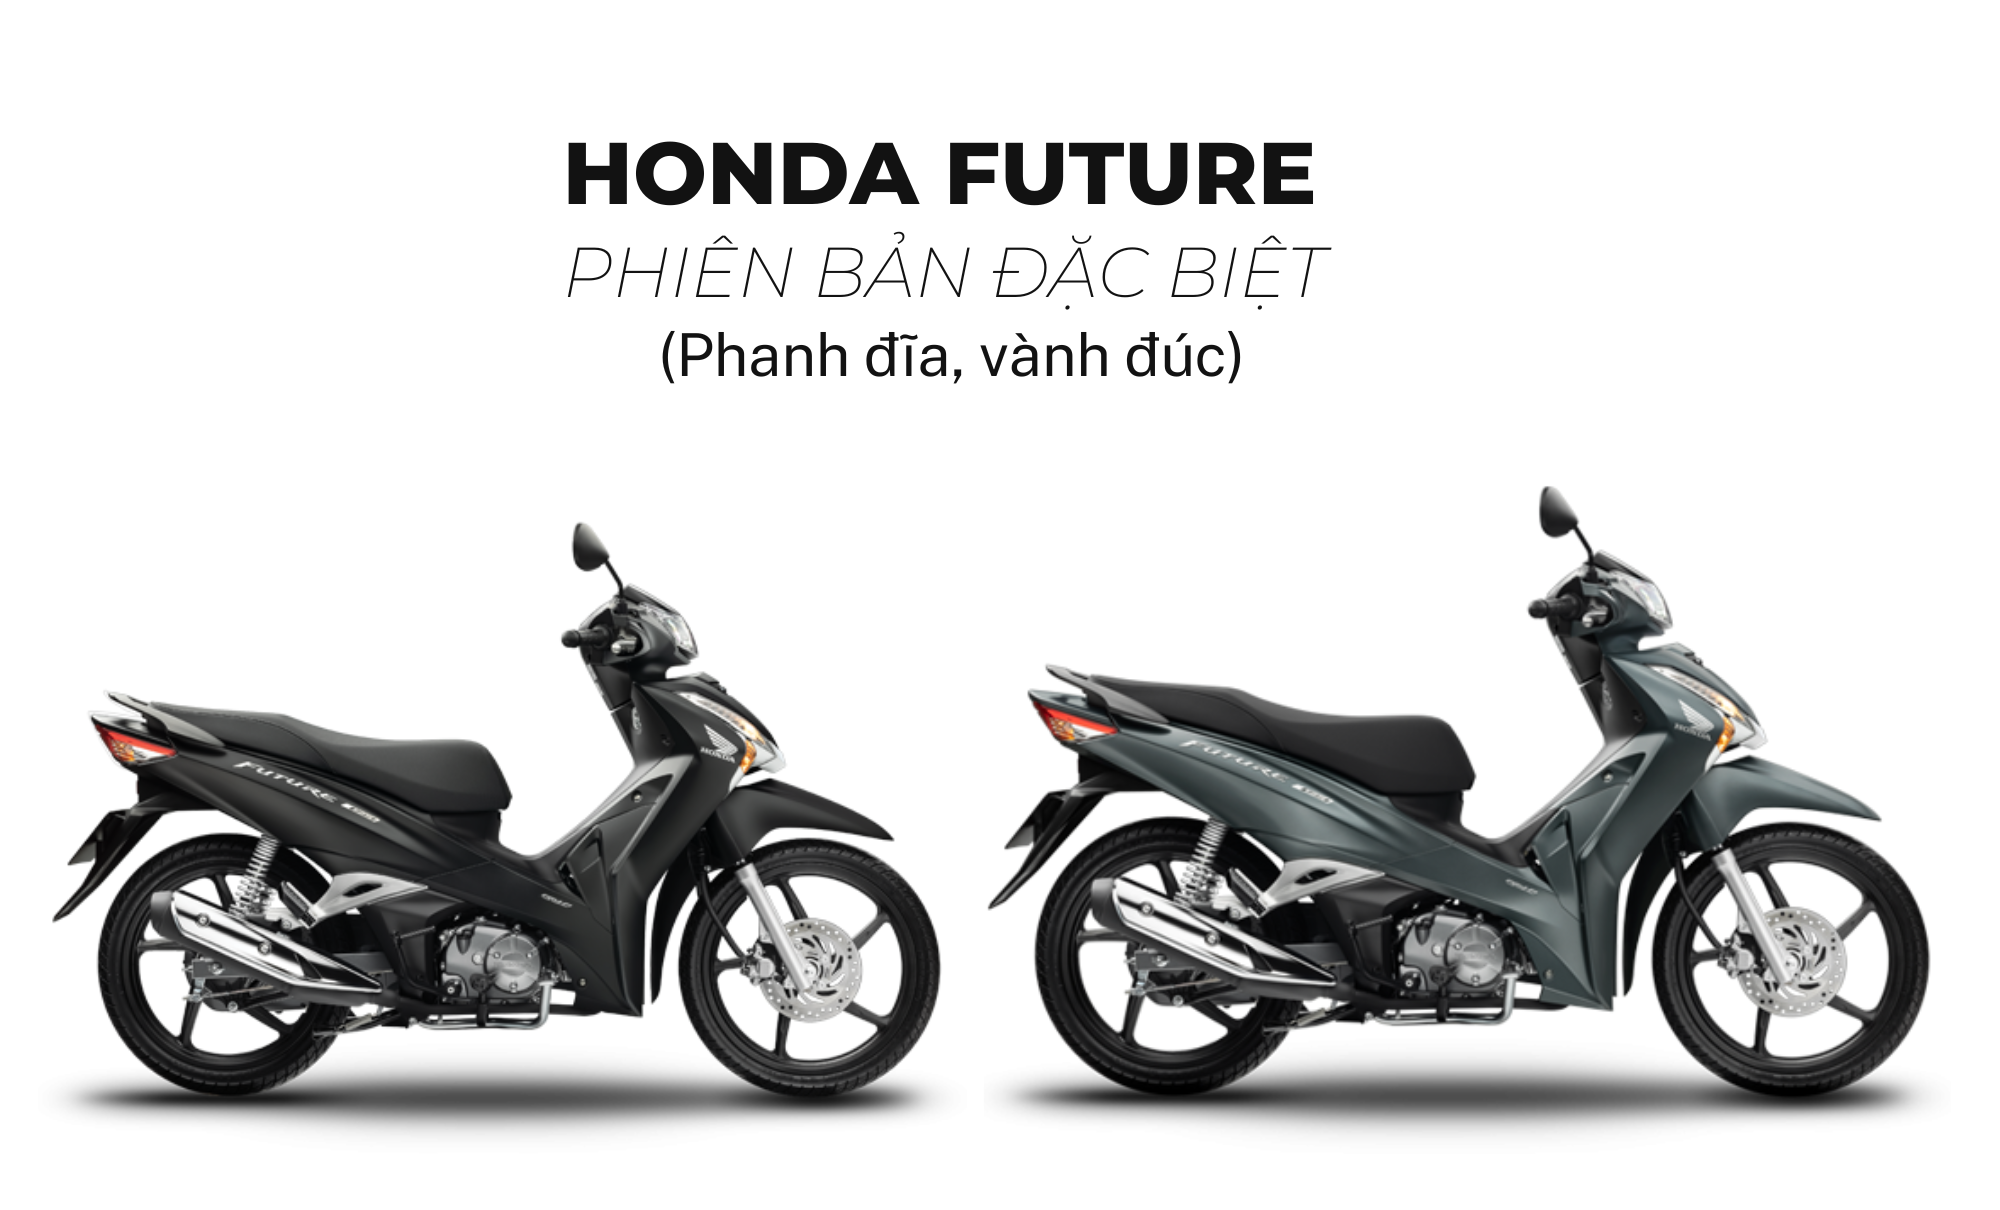 Honda Future 125cc  Đen xám  Xe máy Hồng Phát